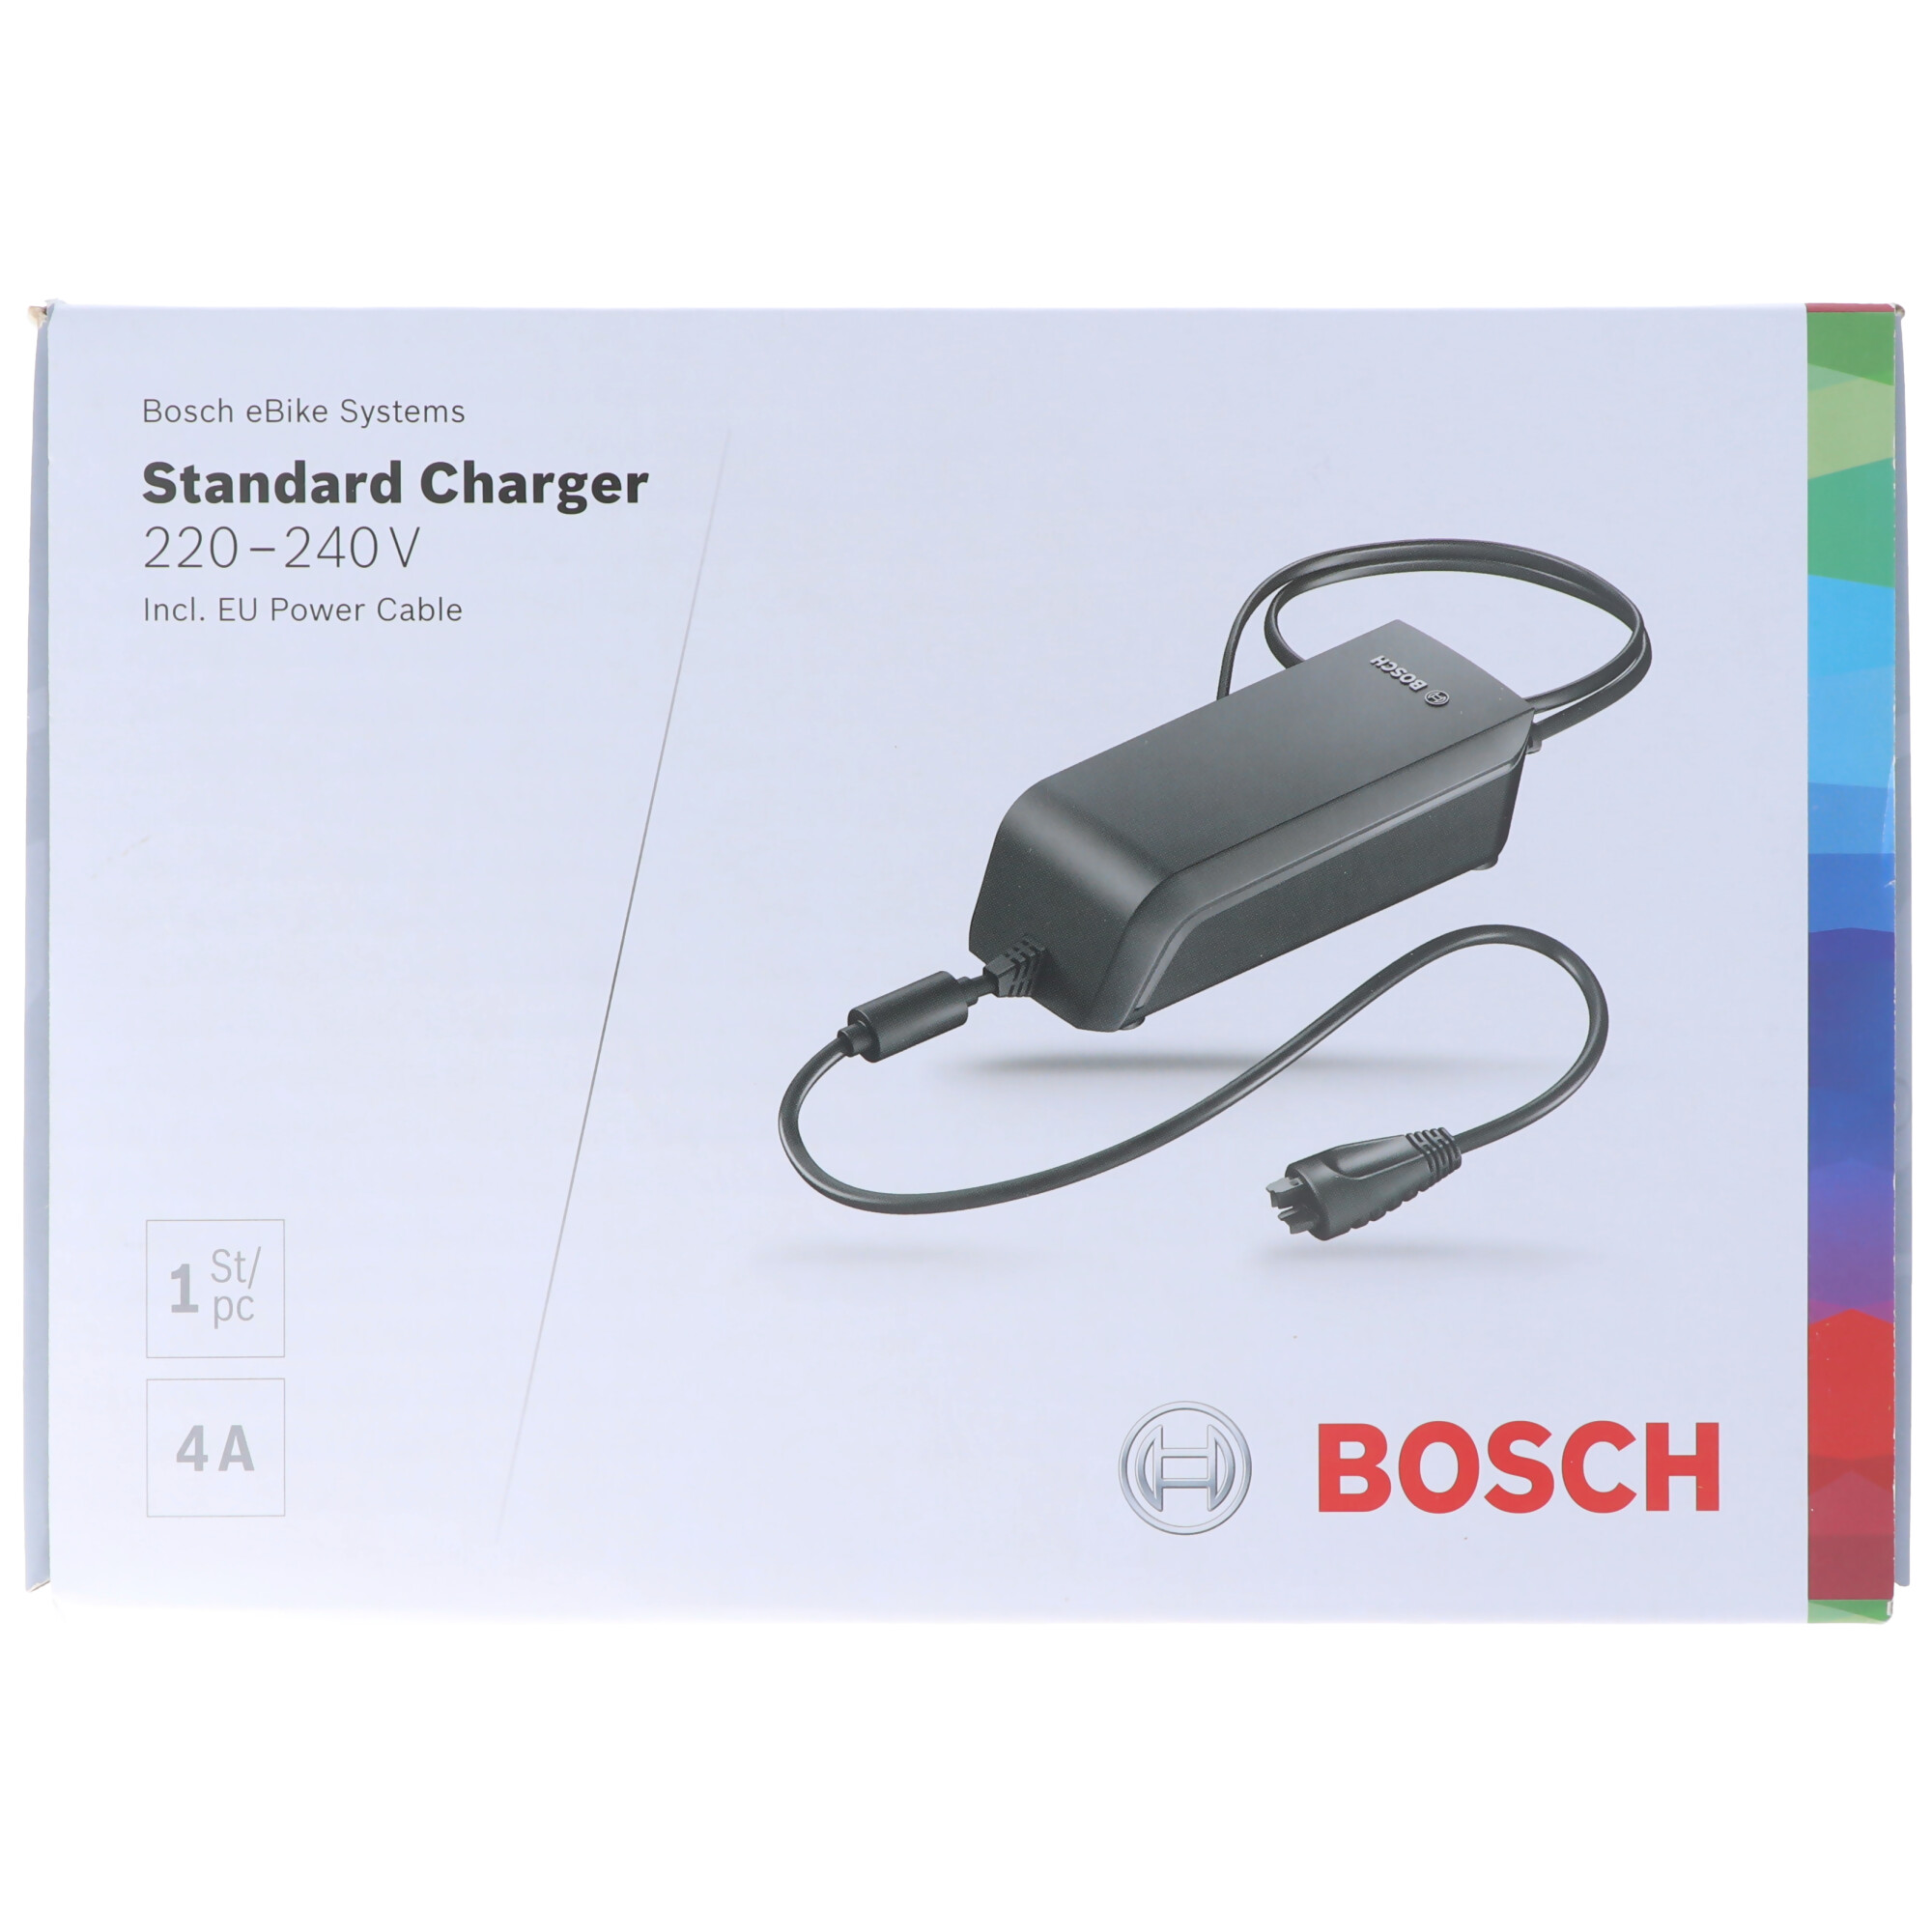 Schnell-Ladegerät für Bosch Active Line, Bosch Performance Line Ladestrom 4A